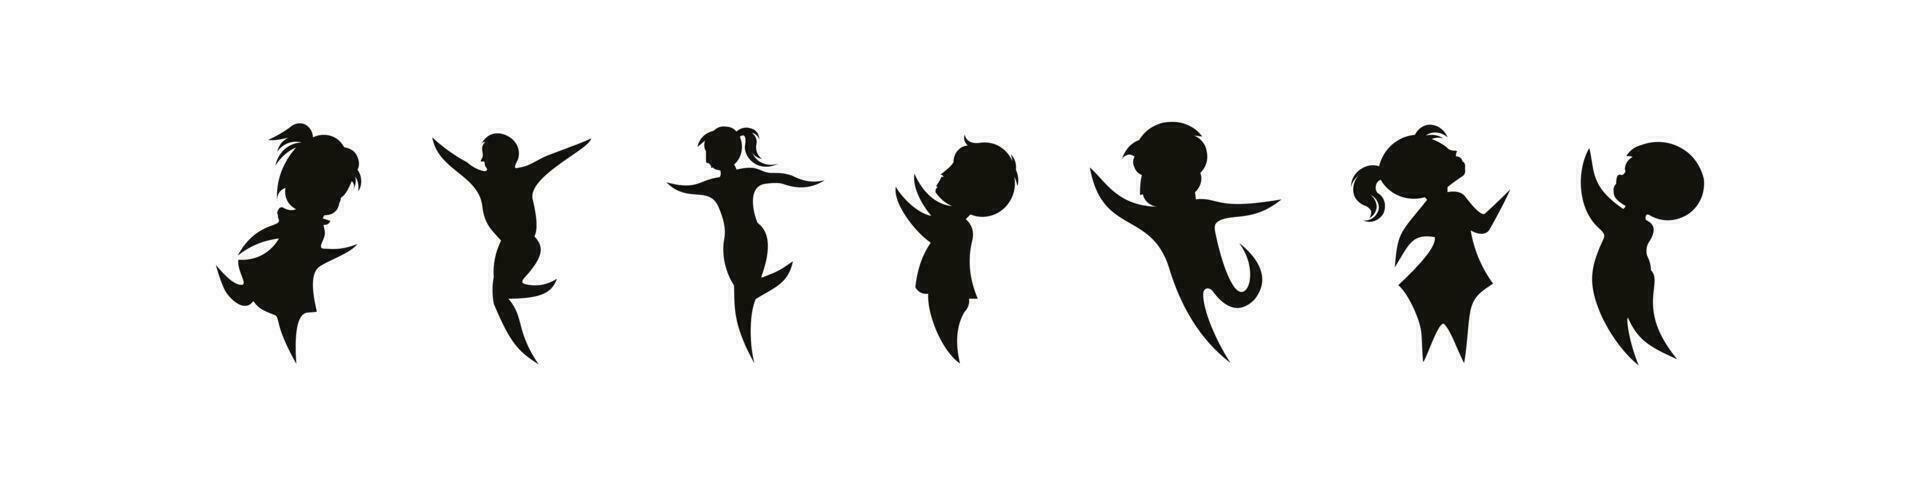 silhouette vectorielle d'enfants, collection d'icônes de silhouettes d'enfants garçons et filles mis en illustration vectorielle vecteur